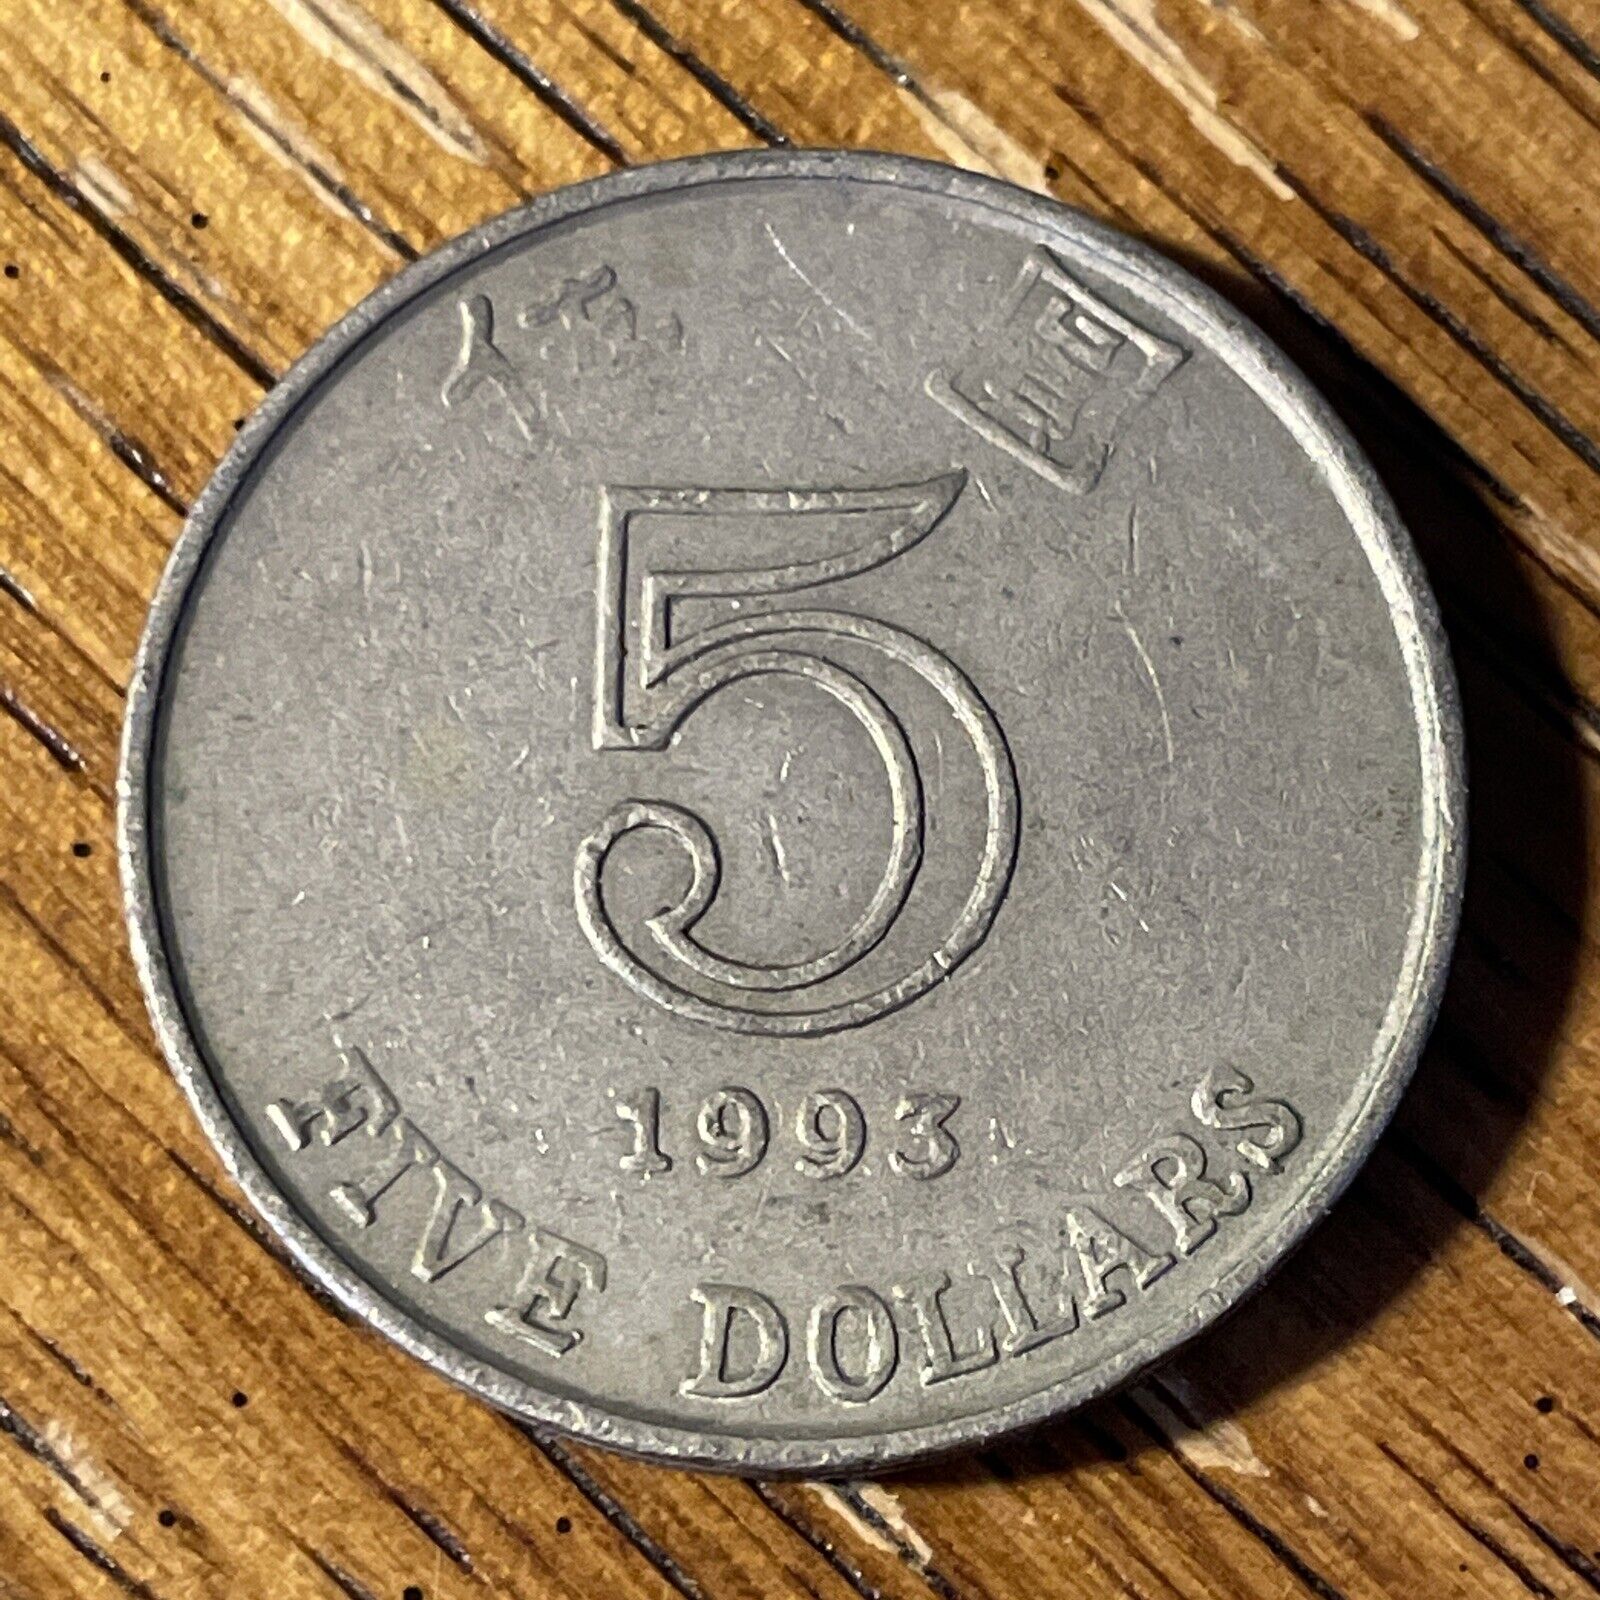 1993 Hong Kong 5 Dollar Coin. Shipping USPS. 220224